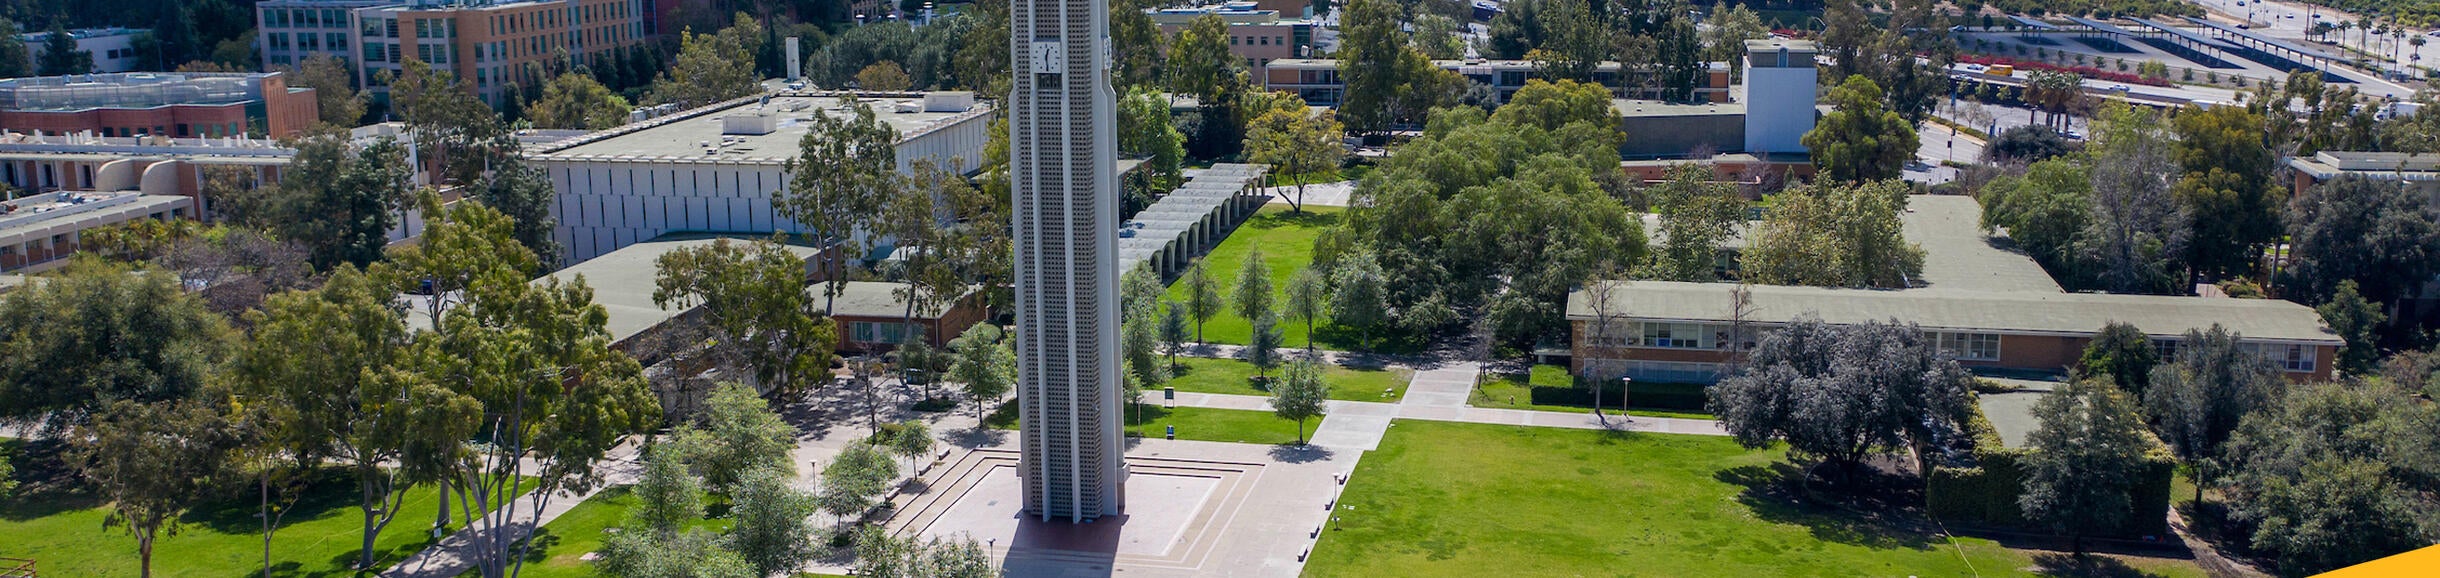 UCR Campus Aerial Photo